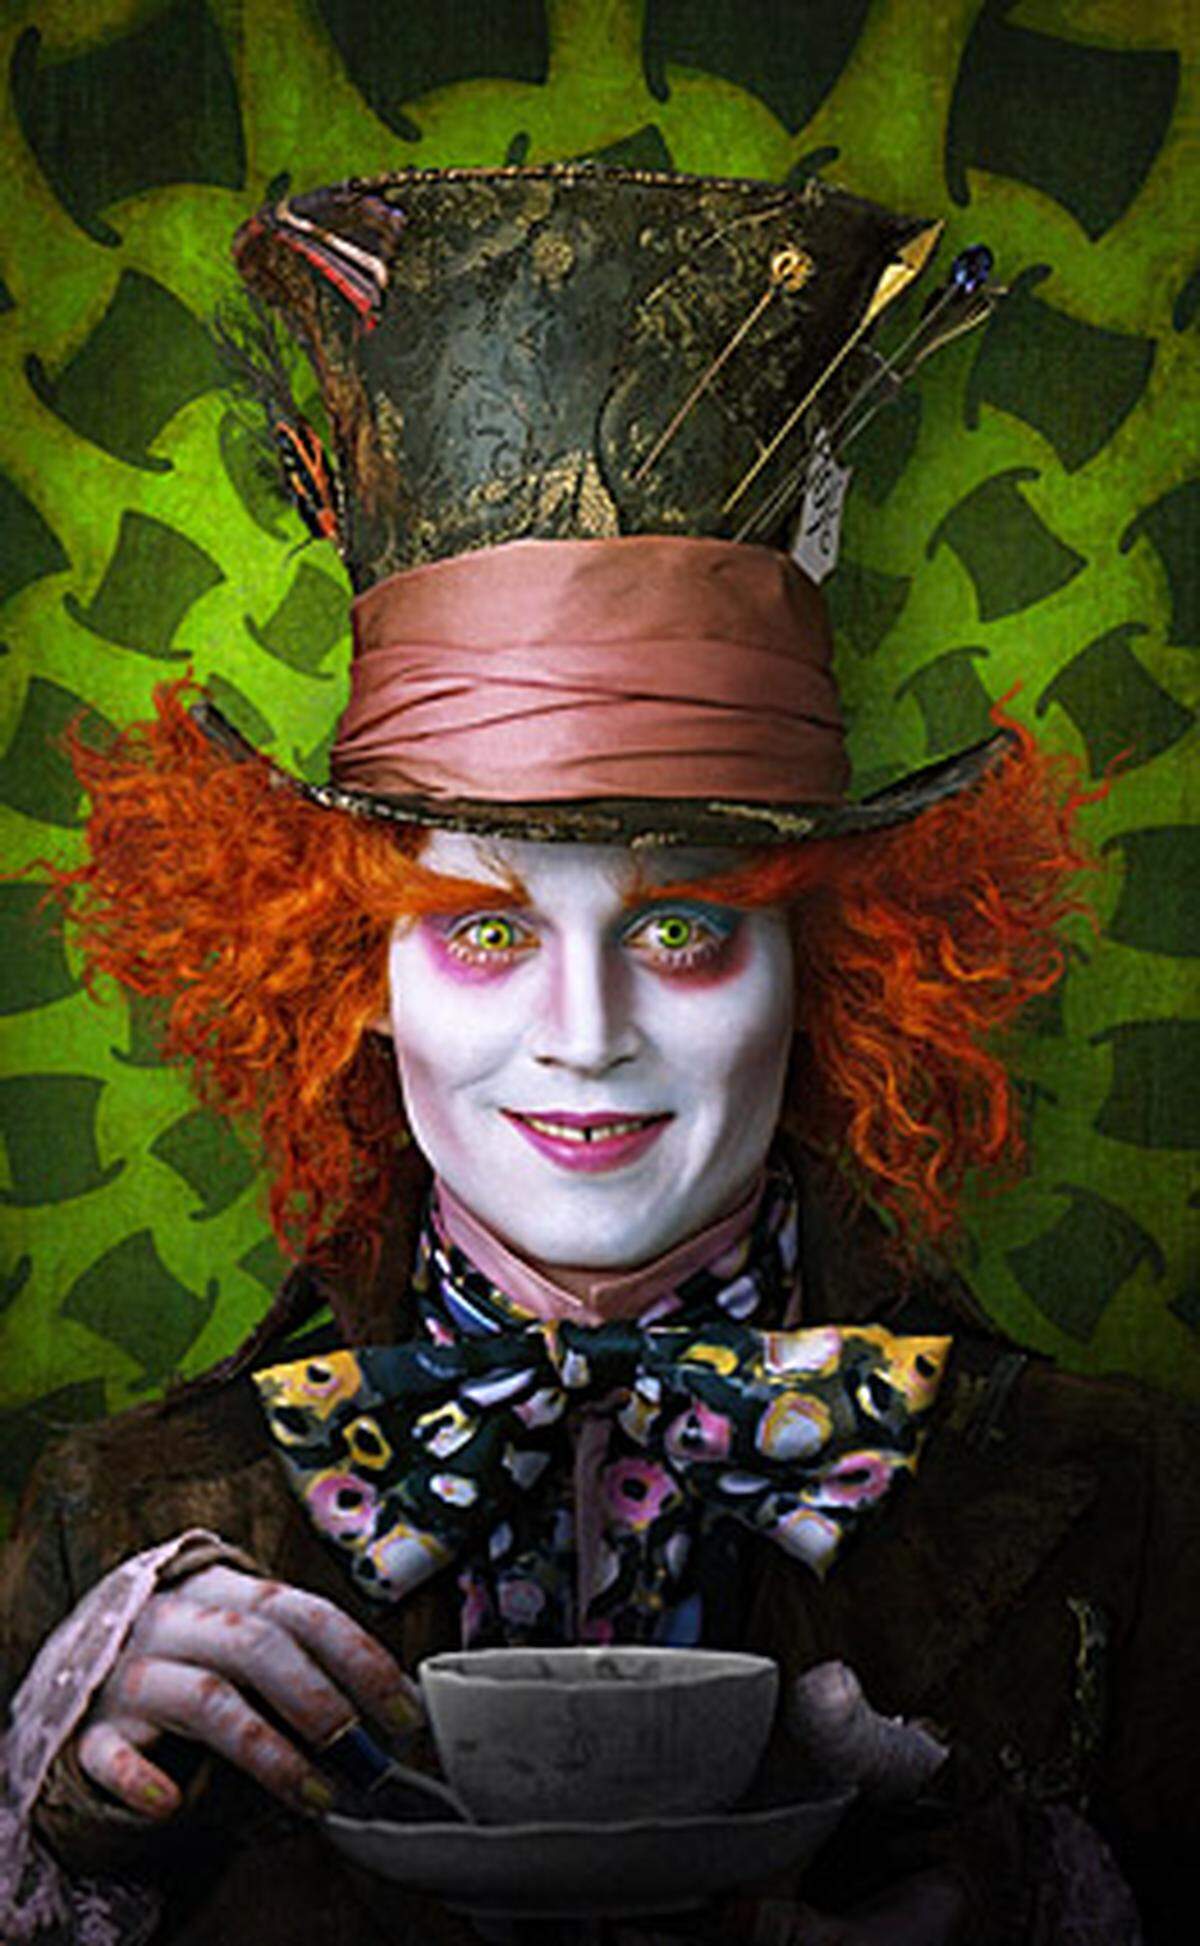 Das kann heiter werden: Kultregisseur Tim Burton hat Lewis Carrolls Kinderbuch "Alice im Wunderland" verfilmt - in einer der Hauptrollen sein Lieblingsstar Johnny Depp. Er verkörpert den verrückten Hutmacher.